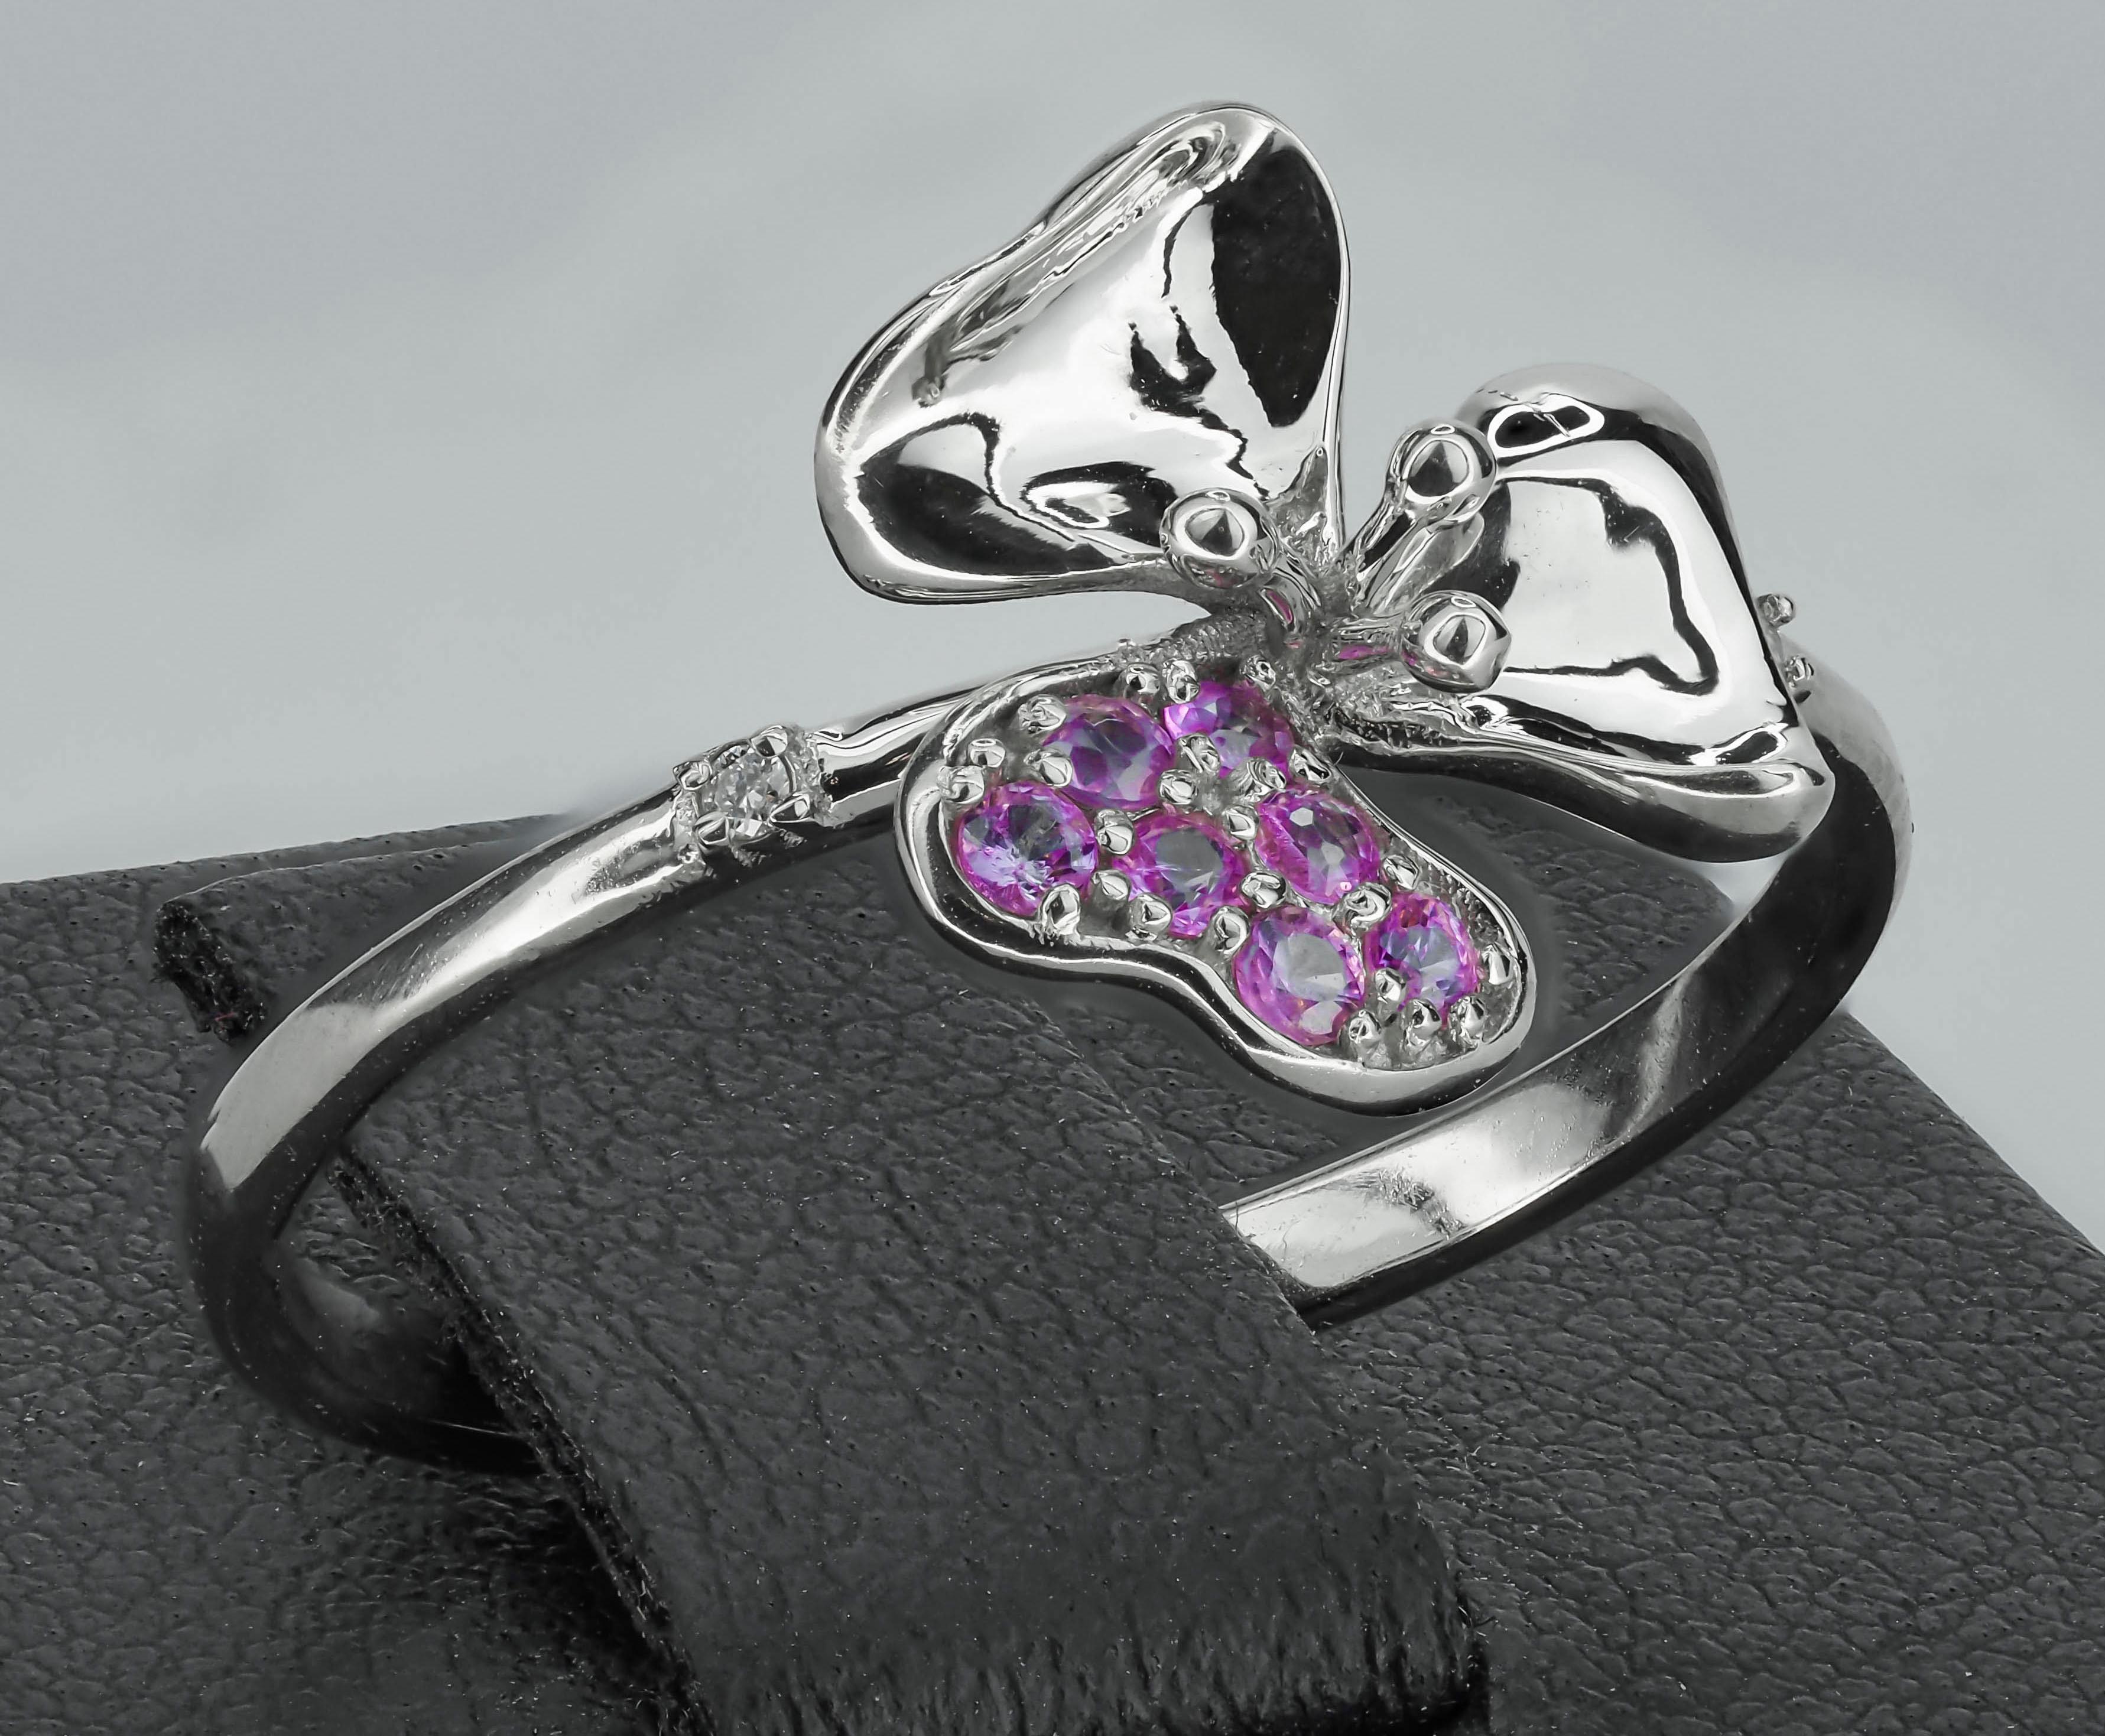 For Sale:  3 petal Flower 14k ring with gemstones. 6